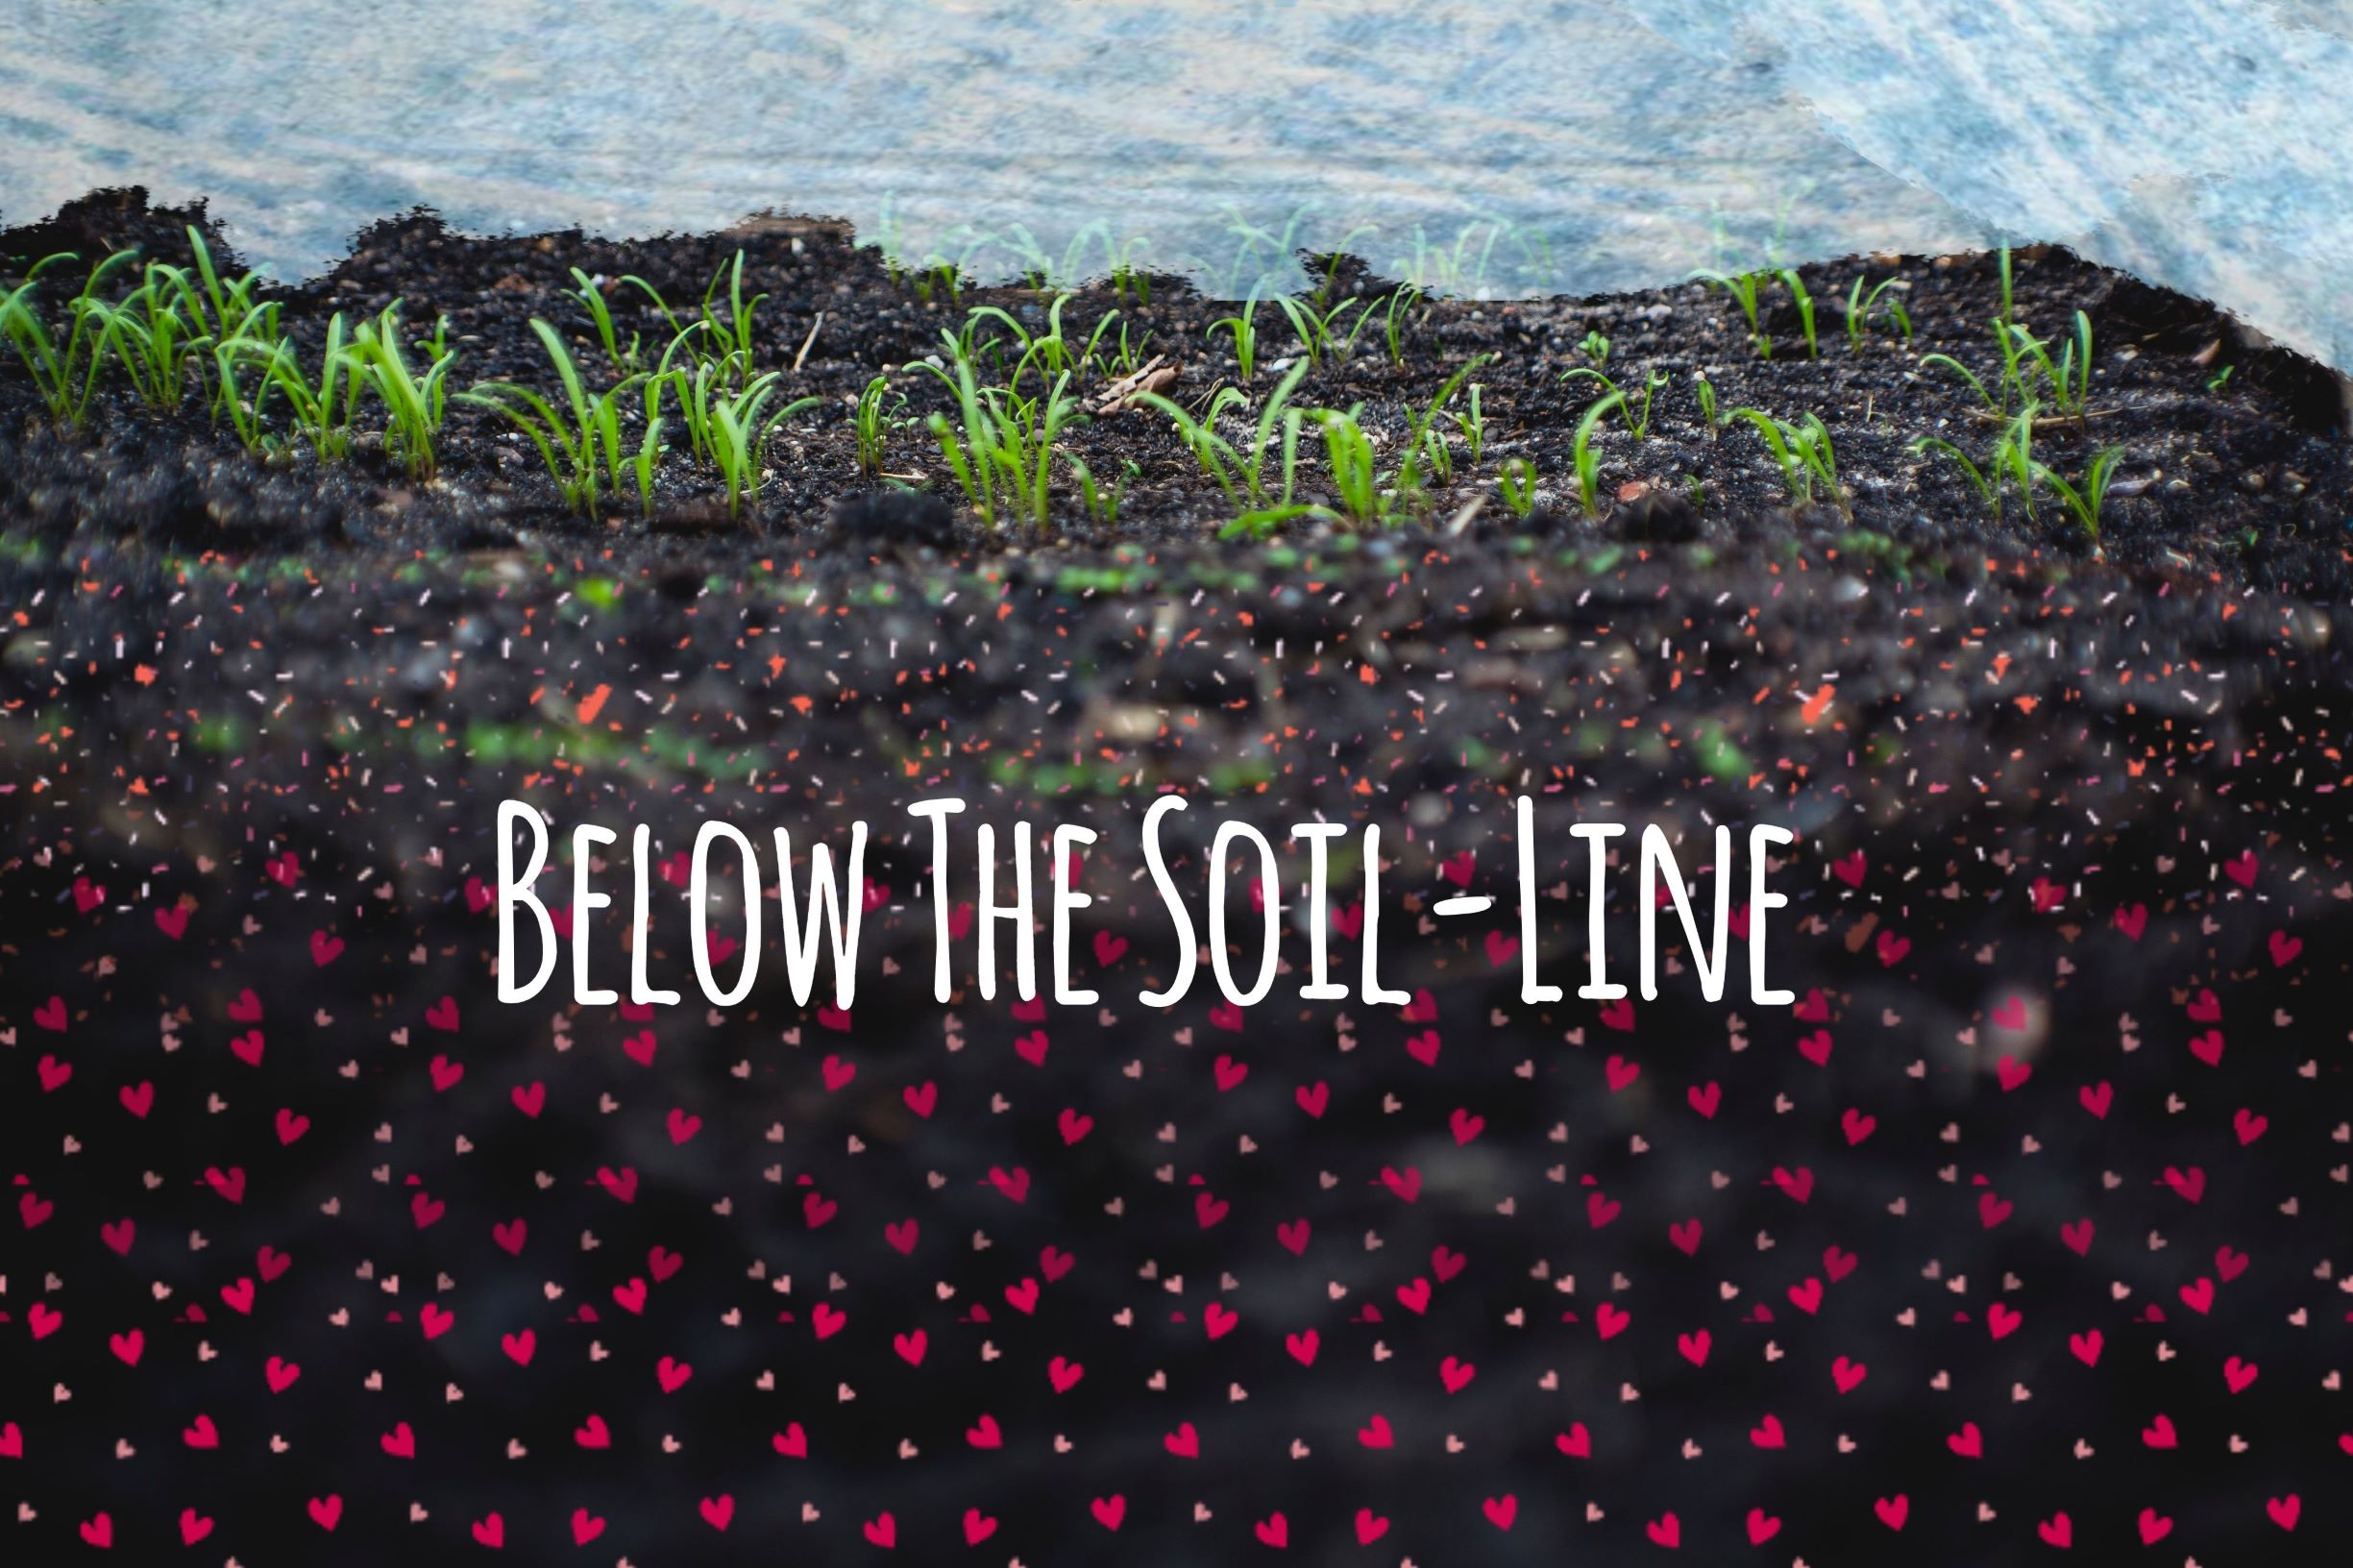 Below the Soil-line